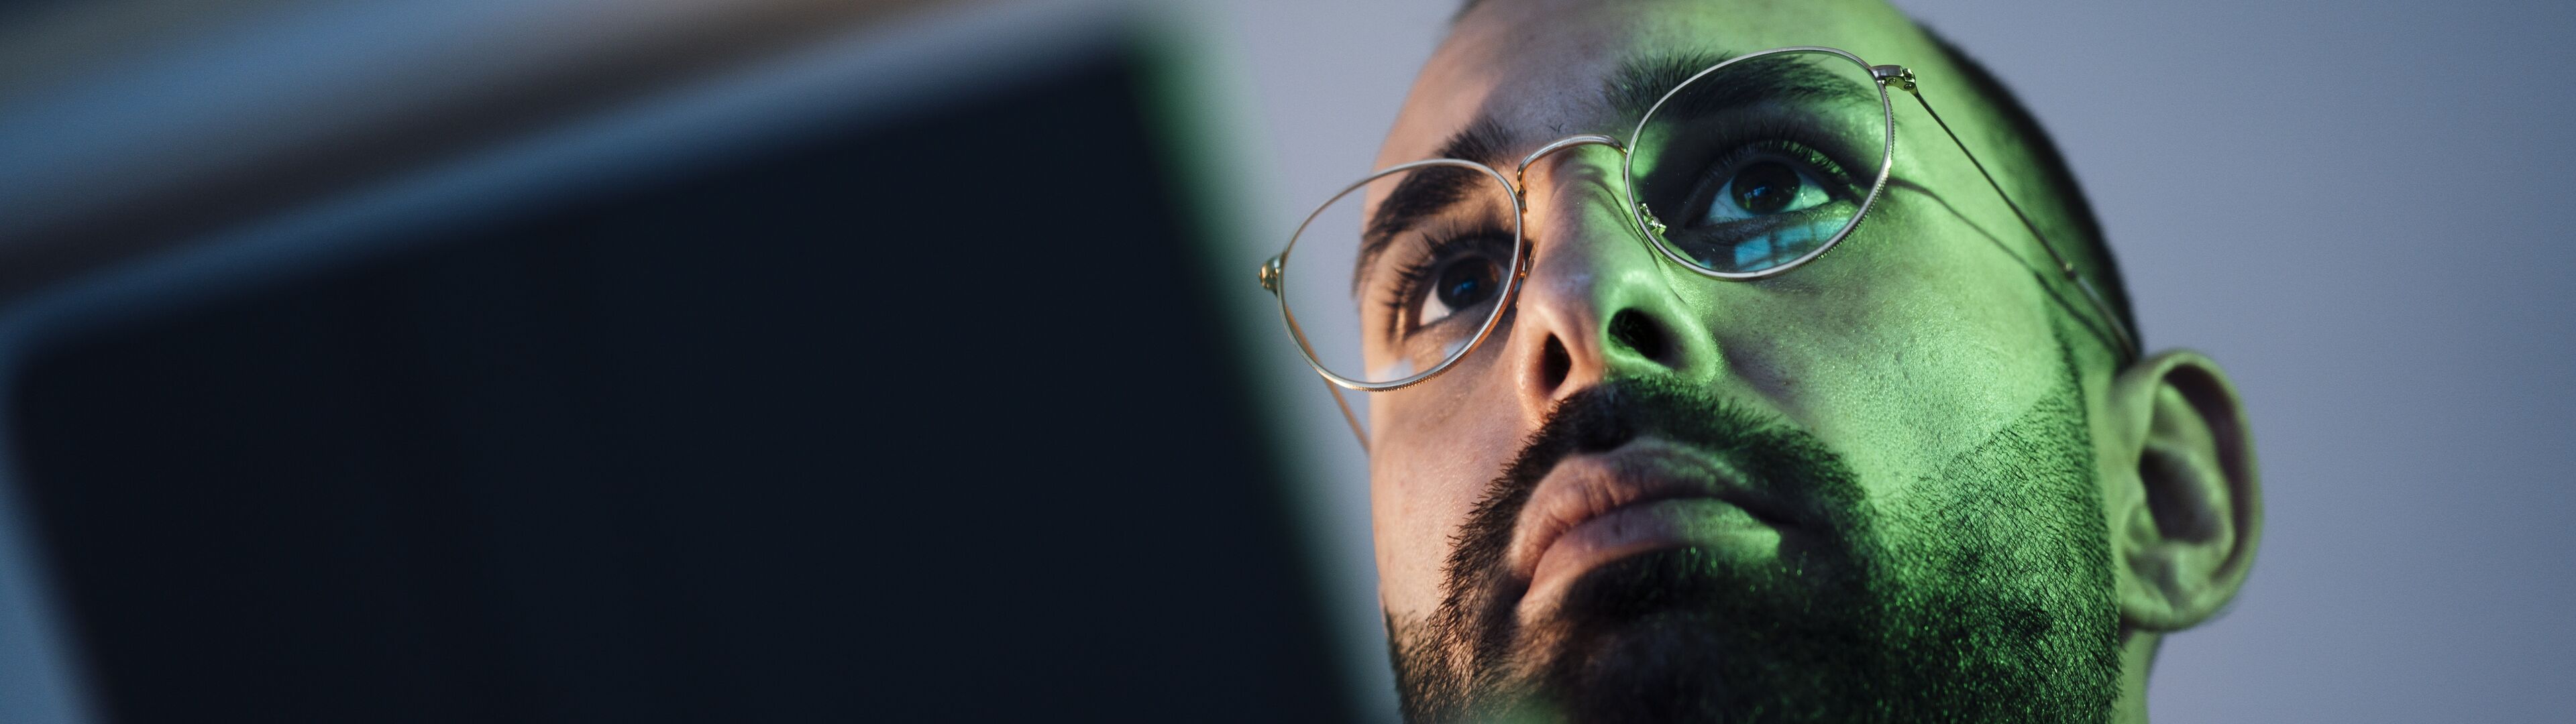 Gros plan d'un homme à lunettes regardant un appareil portable, avec la lumière de l'écran se reflétant sur son visage.

